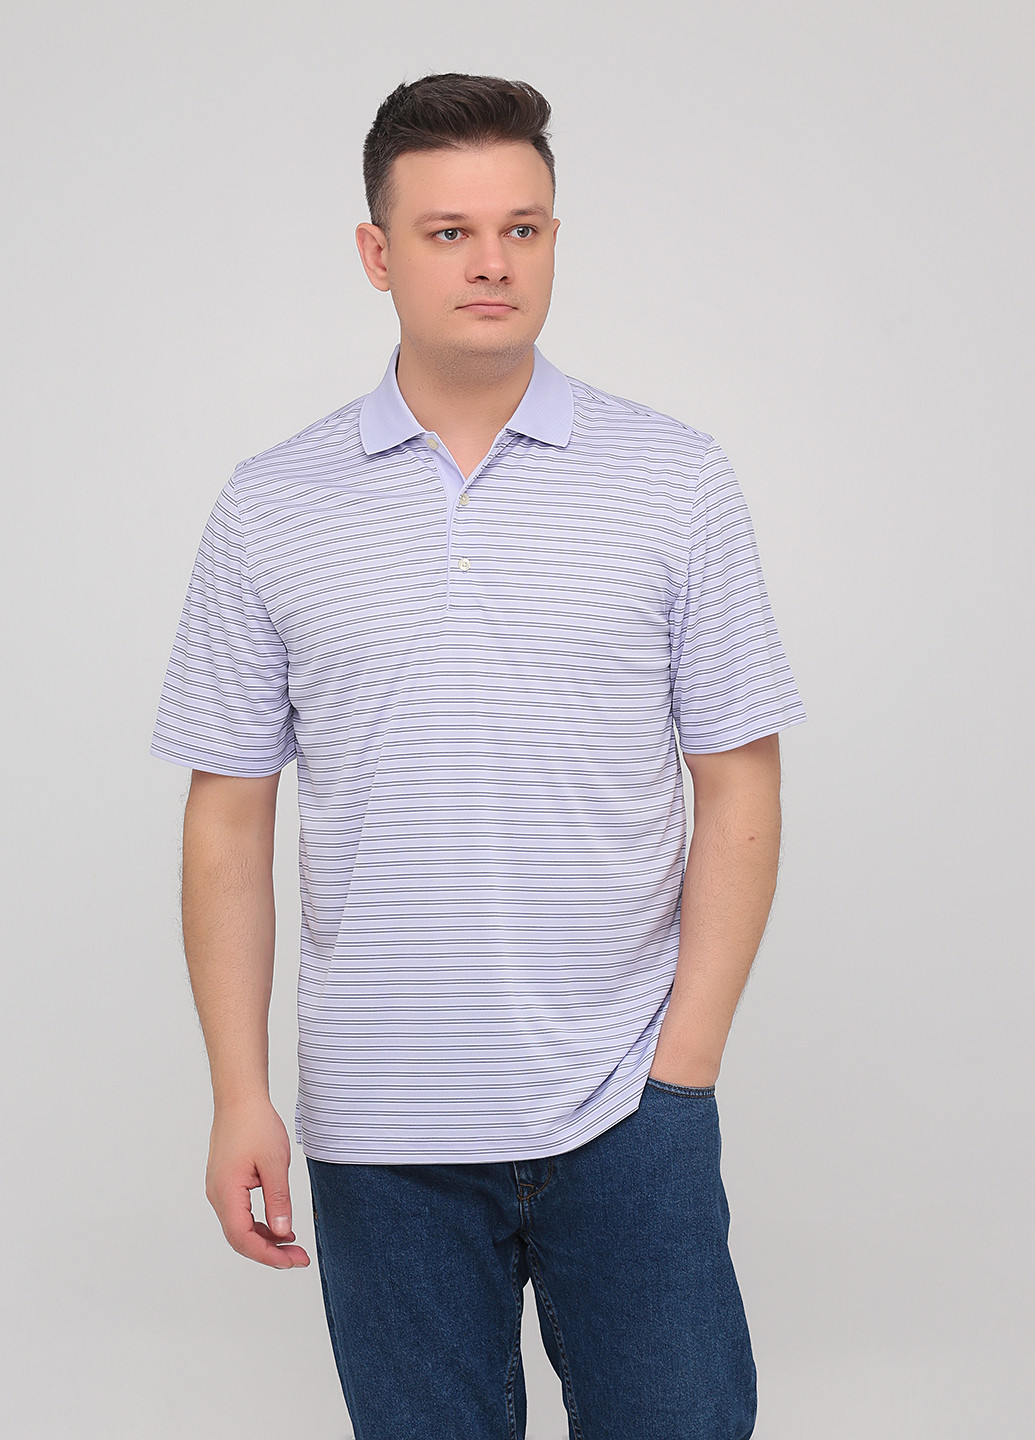 Лавандовая футболка-поло для мужчин Greg Norman в полоску